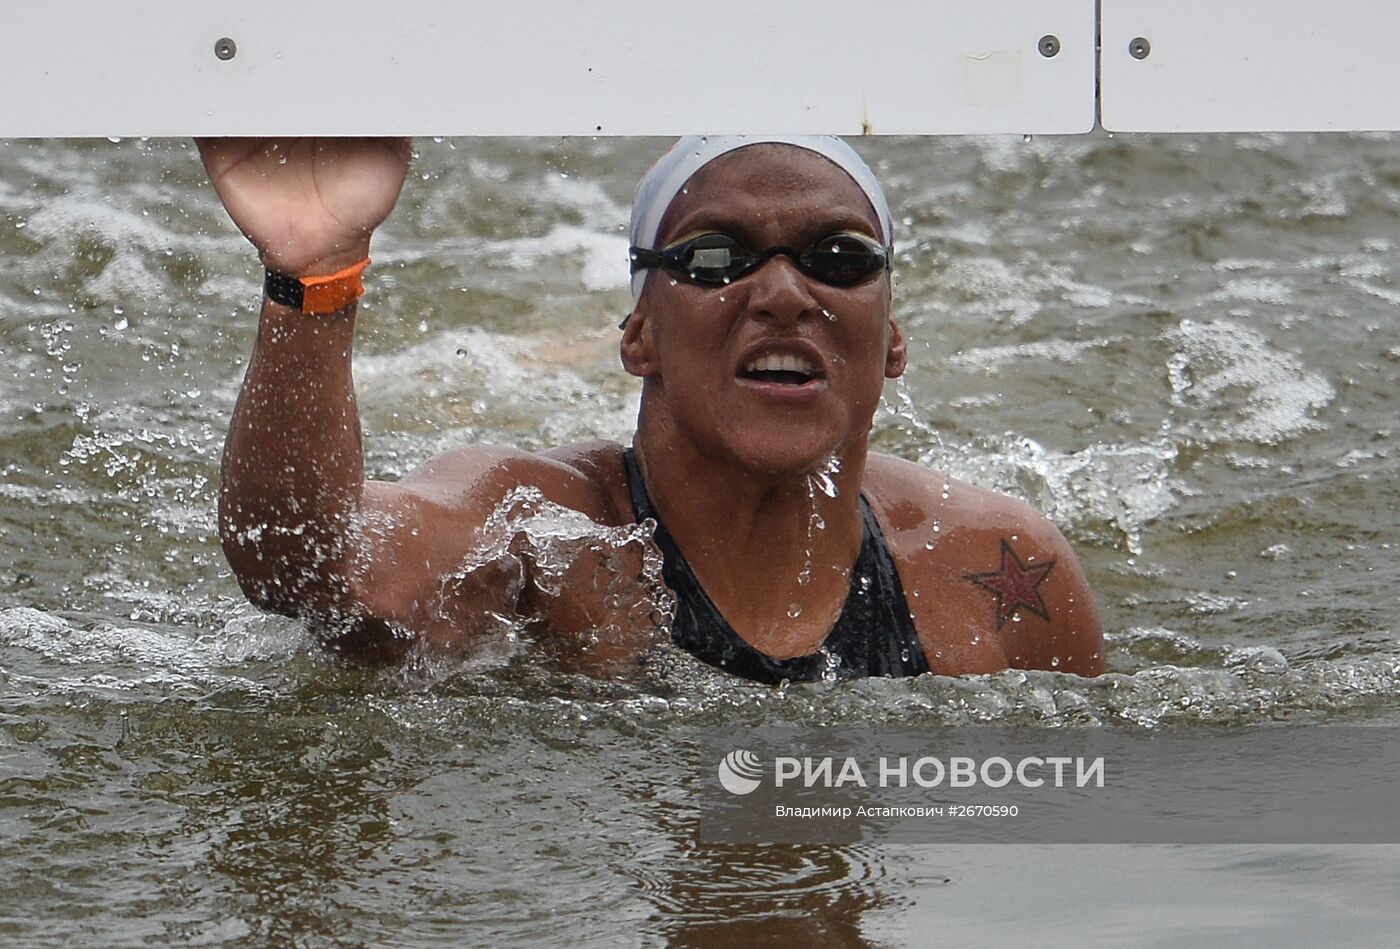 Чемпионат мира FINA 2015. Плавание на открытой воде. Женщины. 25 км